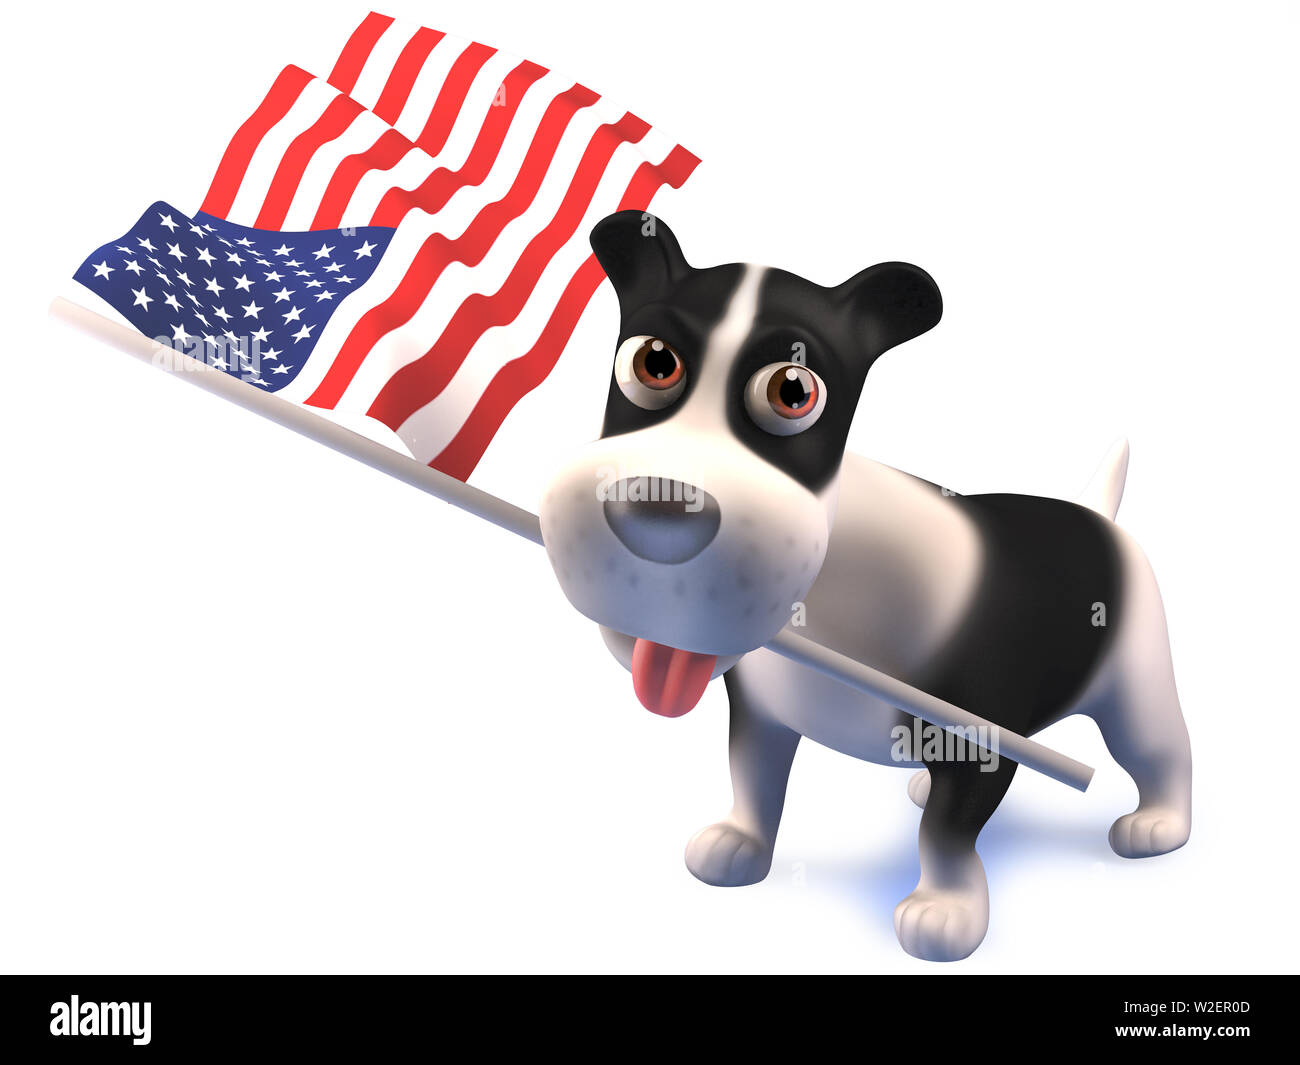 Cool puppy dog tient le drapeau américain, rendu 3d illustration Banque D'Images